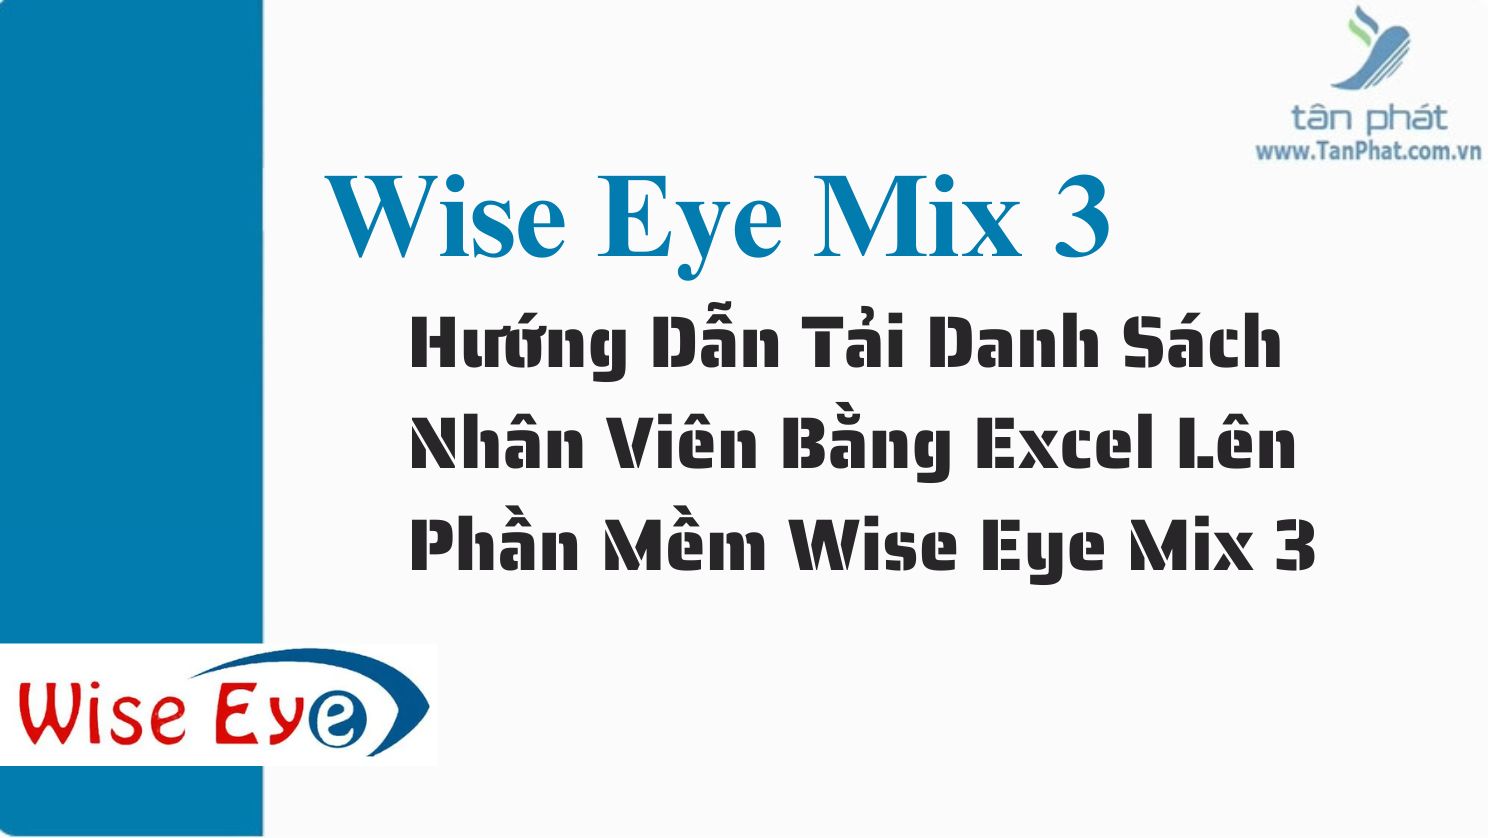 Hướng Dẫn Tải Danh Sách Nhân Viên Bằng Excel Lên Phần Mềm Wise Eye Mix 3 trên máy RJ550 RJ550A RJ550 Plus RJ850A RJ1000 ZKT360 K300 X938C X958C X958A  T8plus X989C RJ919 RJ879C T6C 